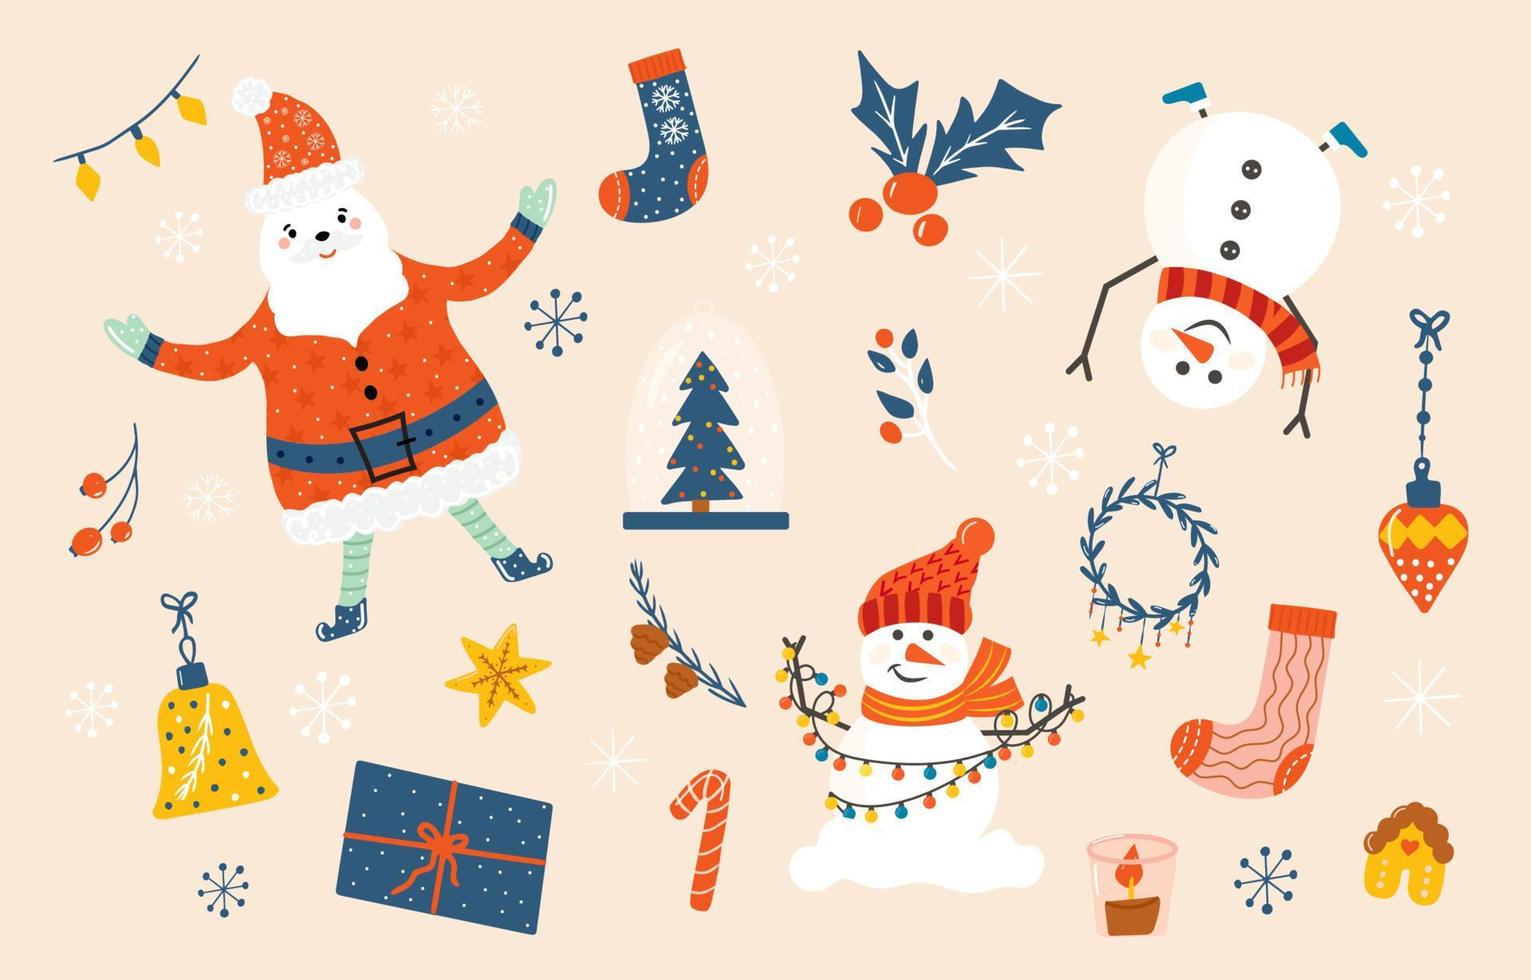 vektor uppsättning mysiga juldekorationer med snögubbar och tomten. bunt av grannlåt, krans, presenter, strumpor, gran. barn illustration. klippbok trendig samling